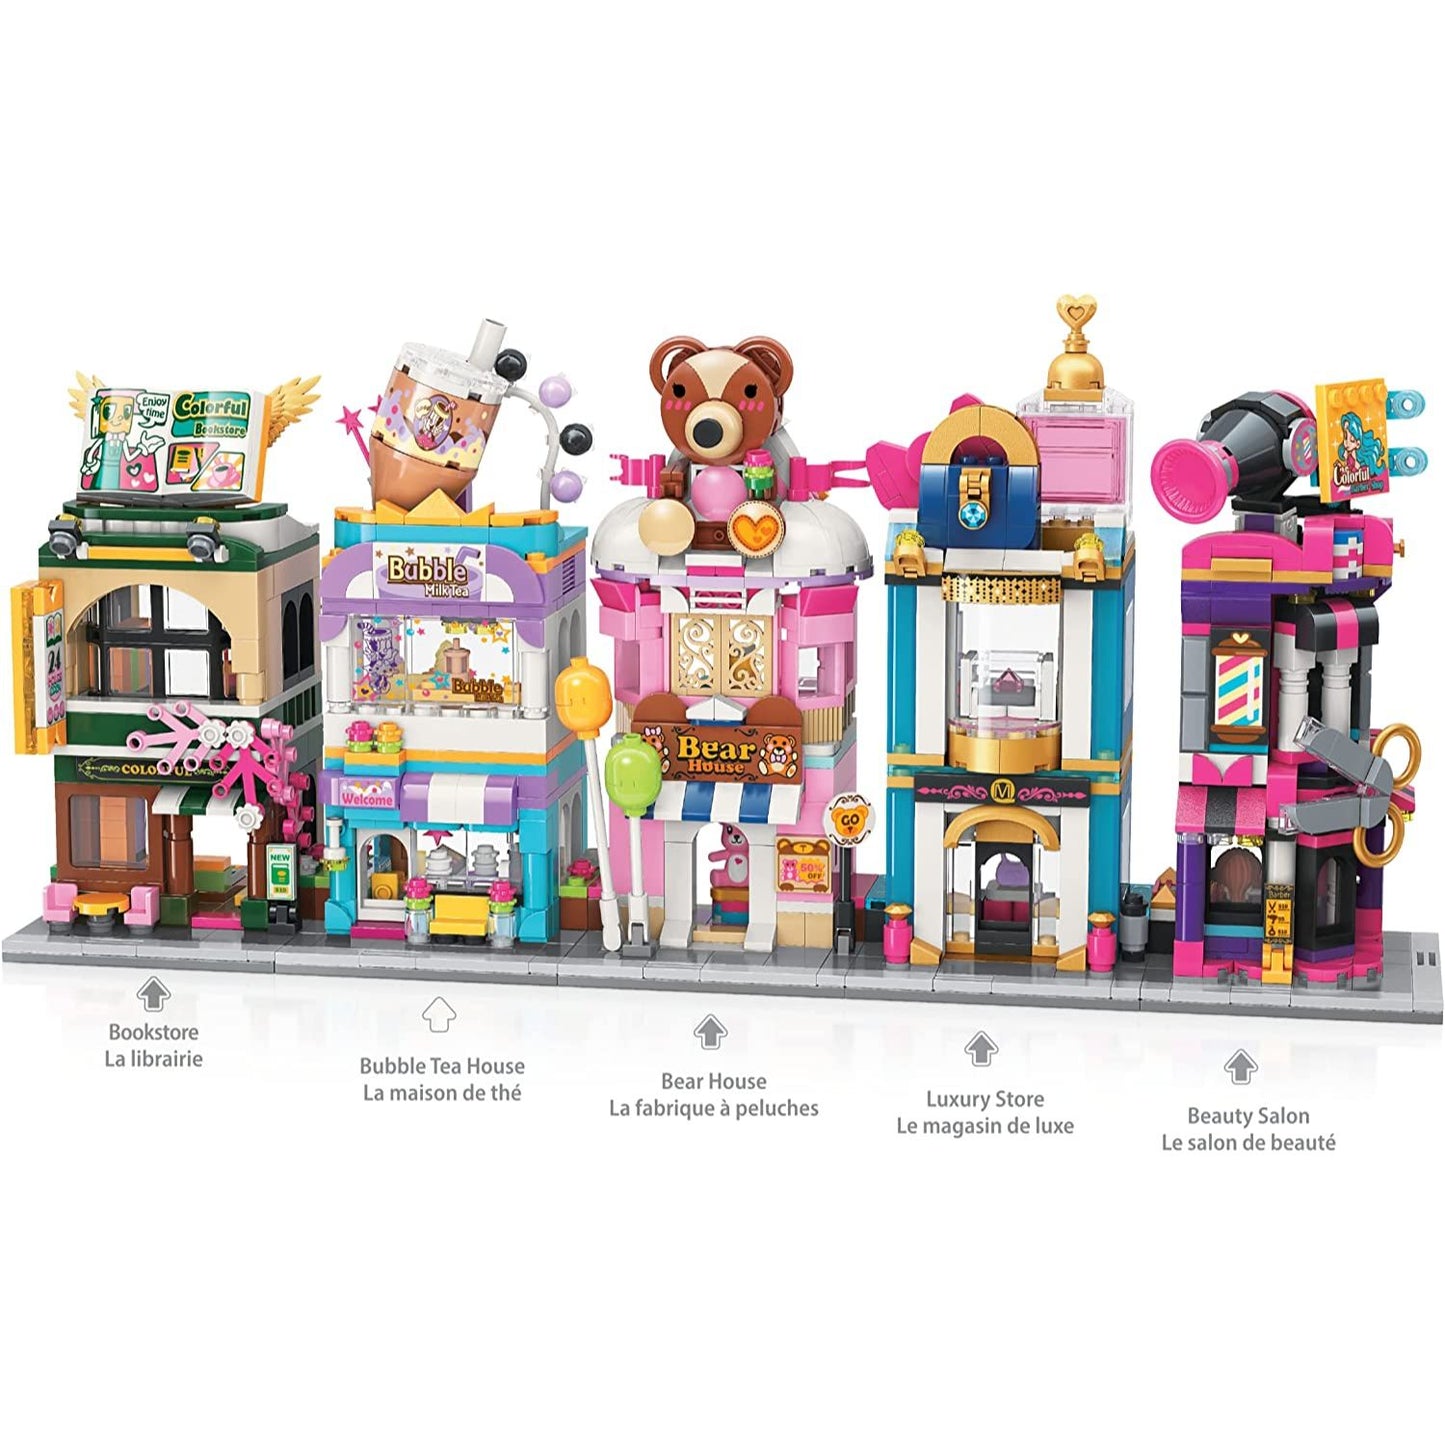 Dragon Blok - City Corner - Bubble Tea House - 302 Pieces Toy Building Set